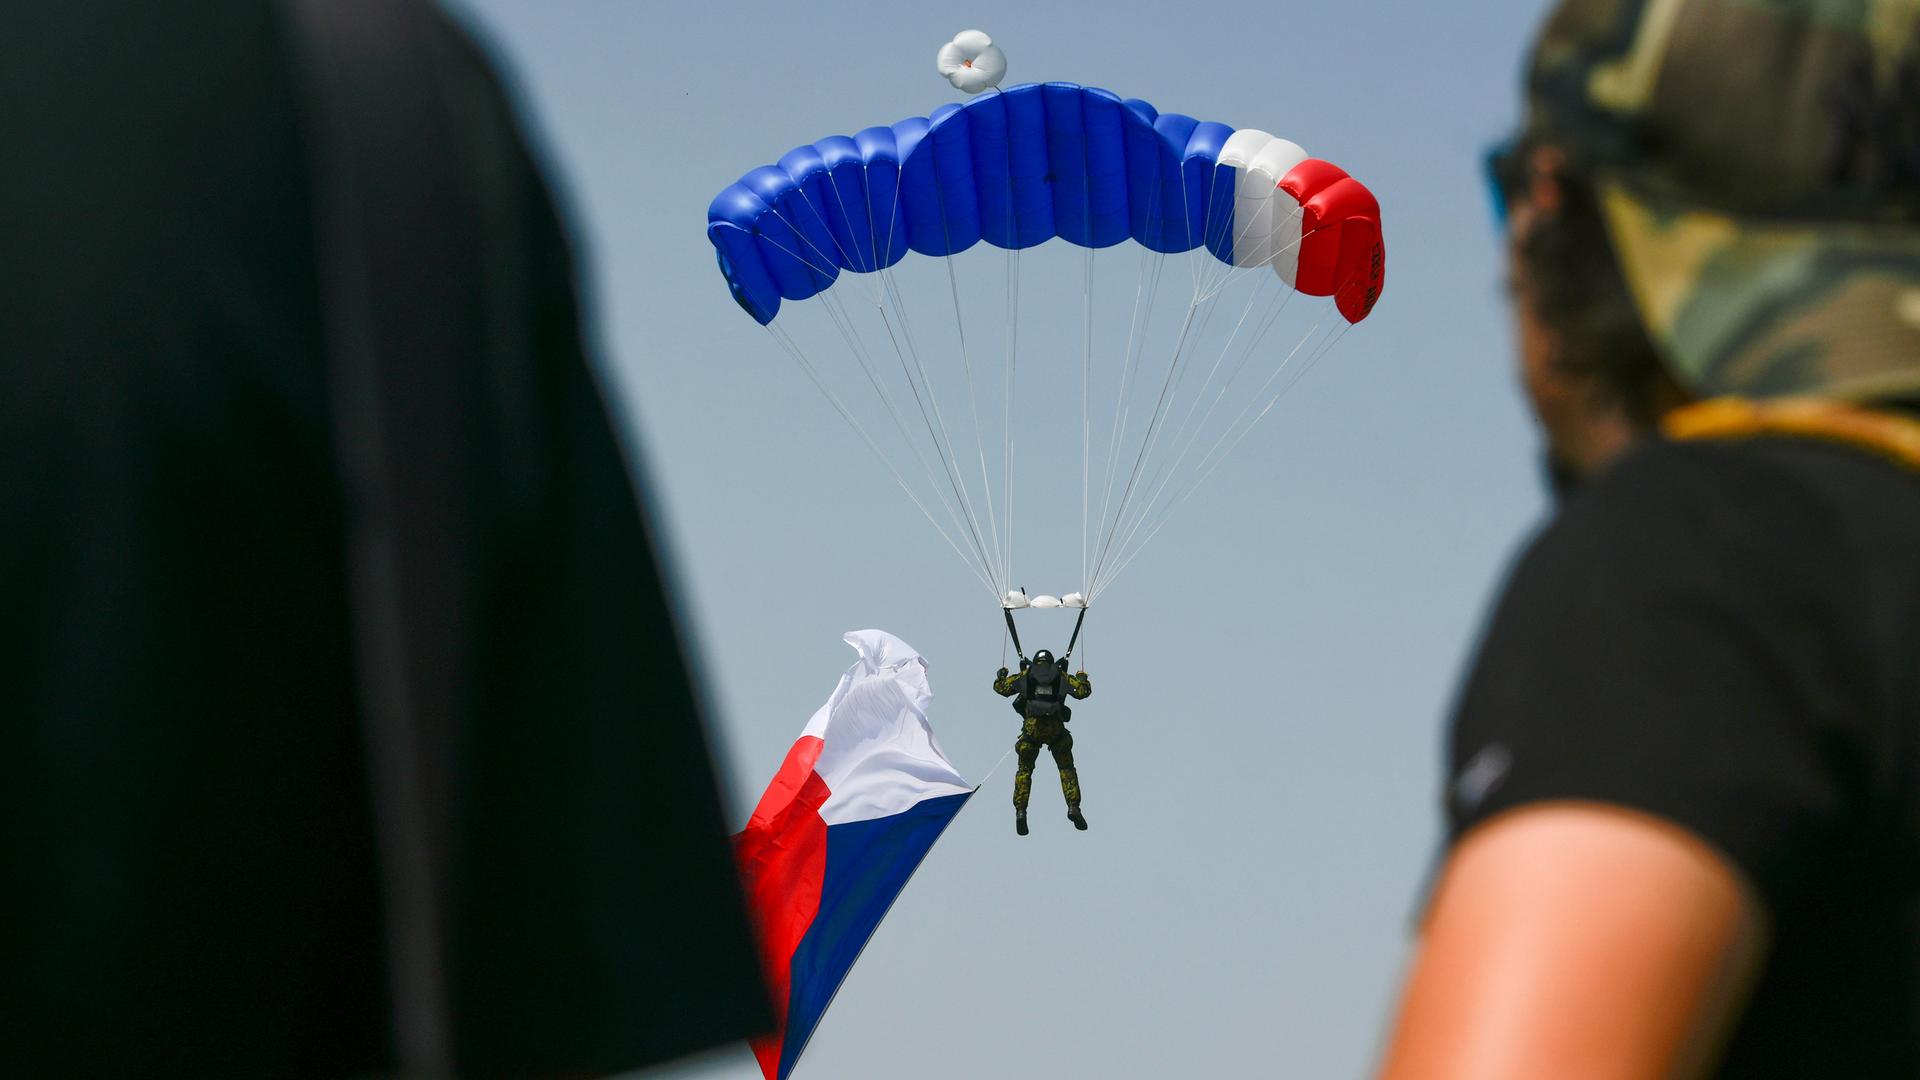 Ein Fallschimspringer mit einer tschechischen Flagge in der Hand landet zwischen Menschen, die dabei zuschauen. Der Fallschirm trägt ebenfalls die tschechischen Nationalfarben.